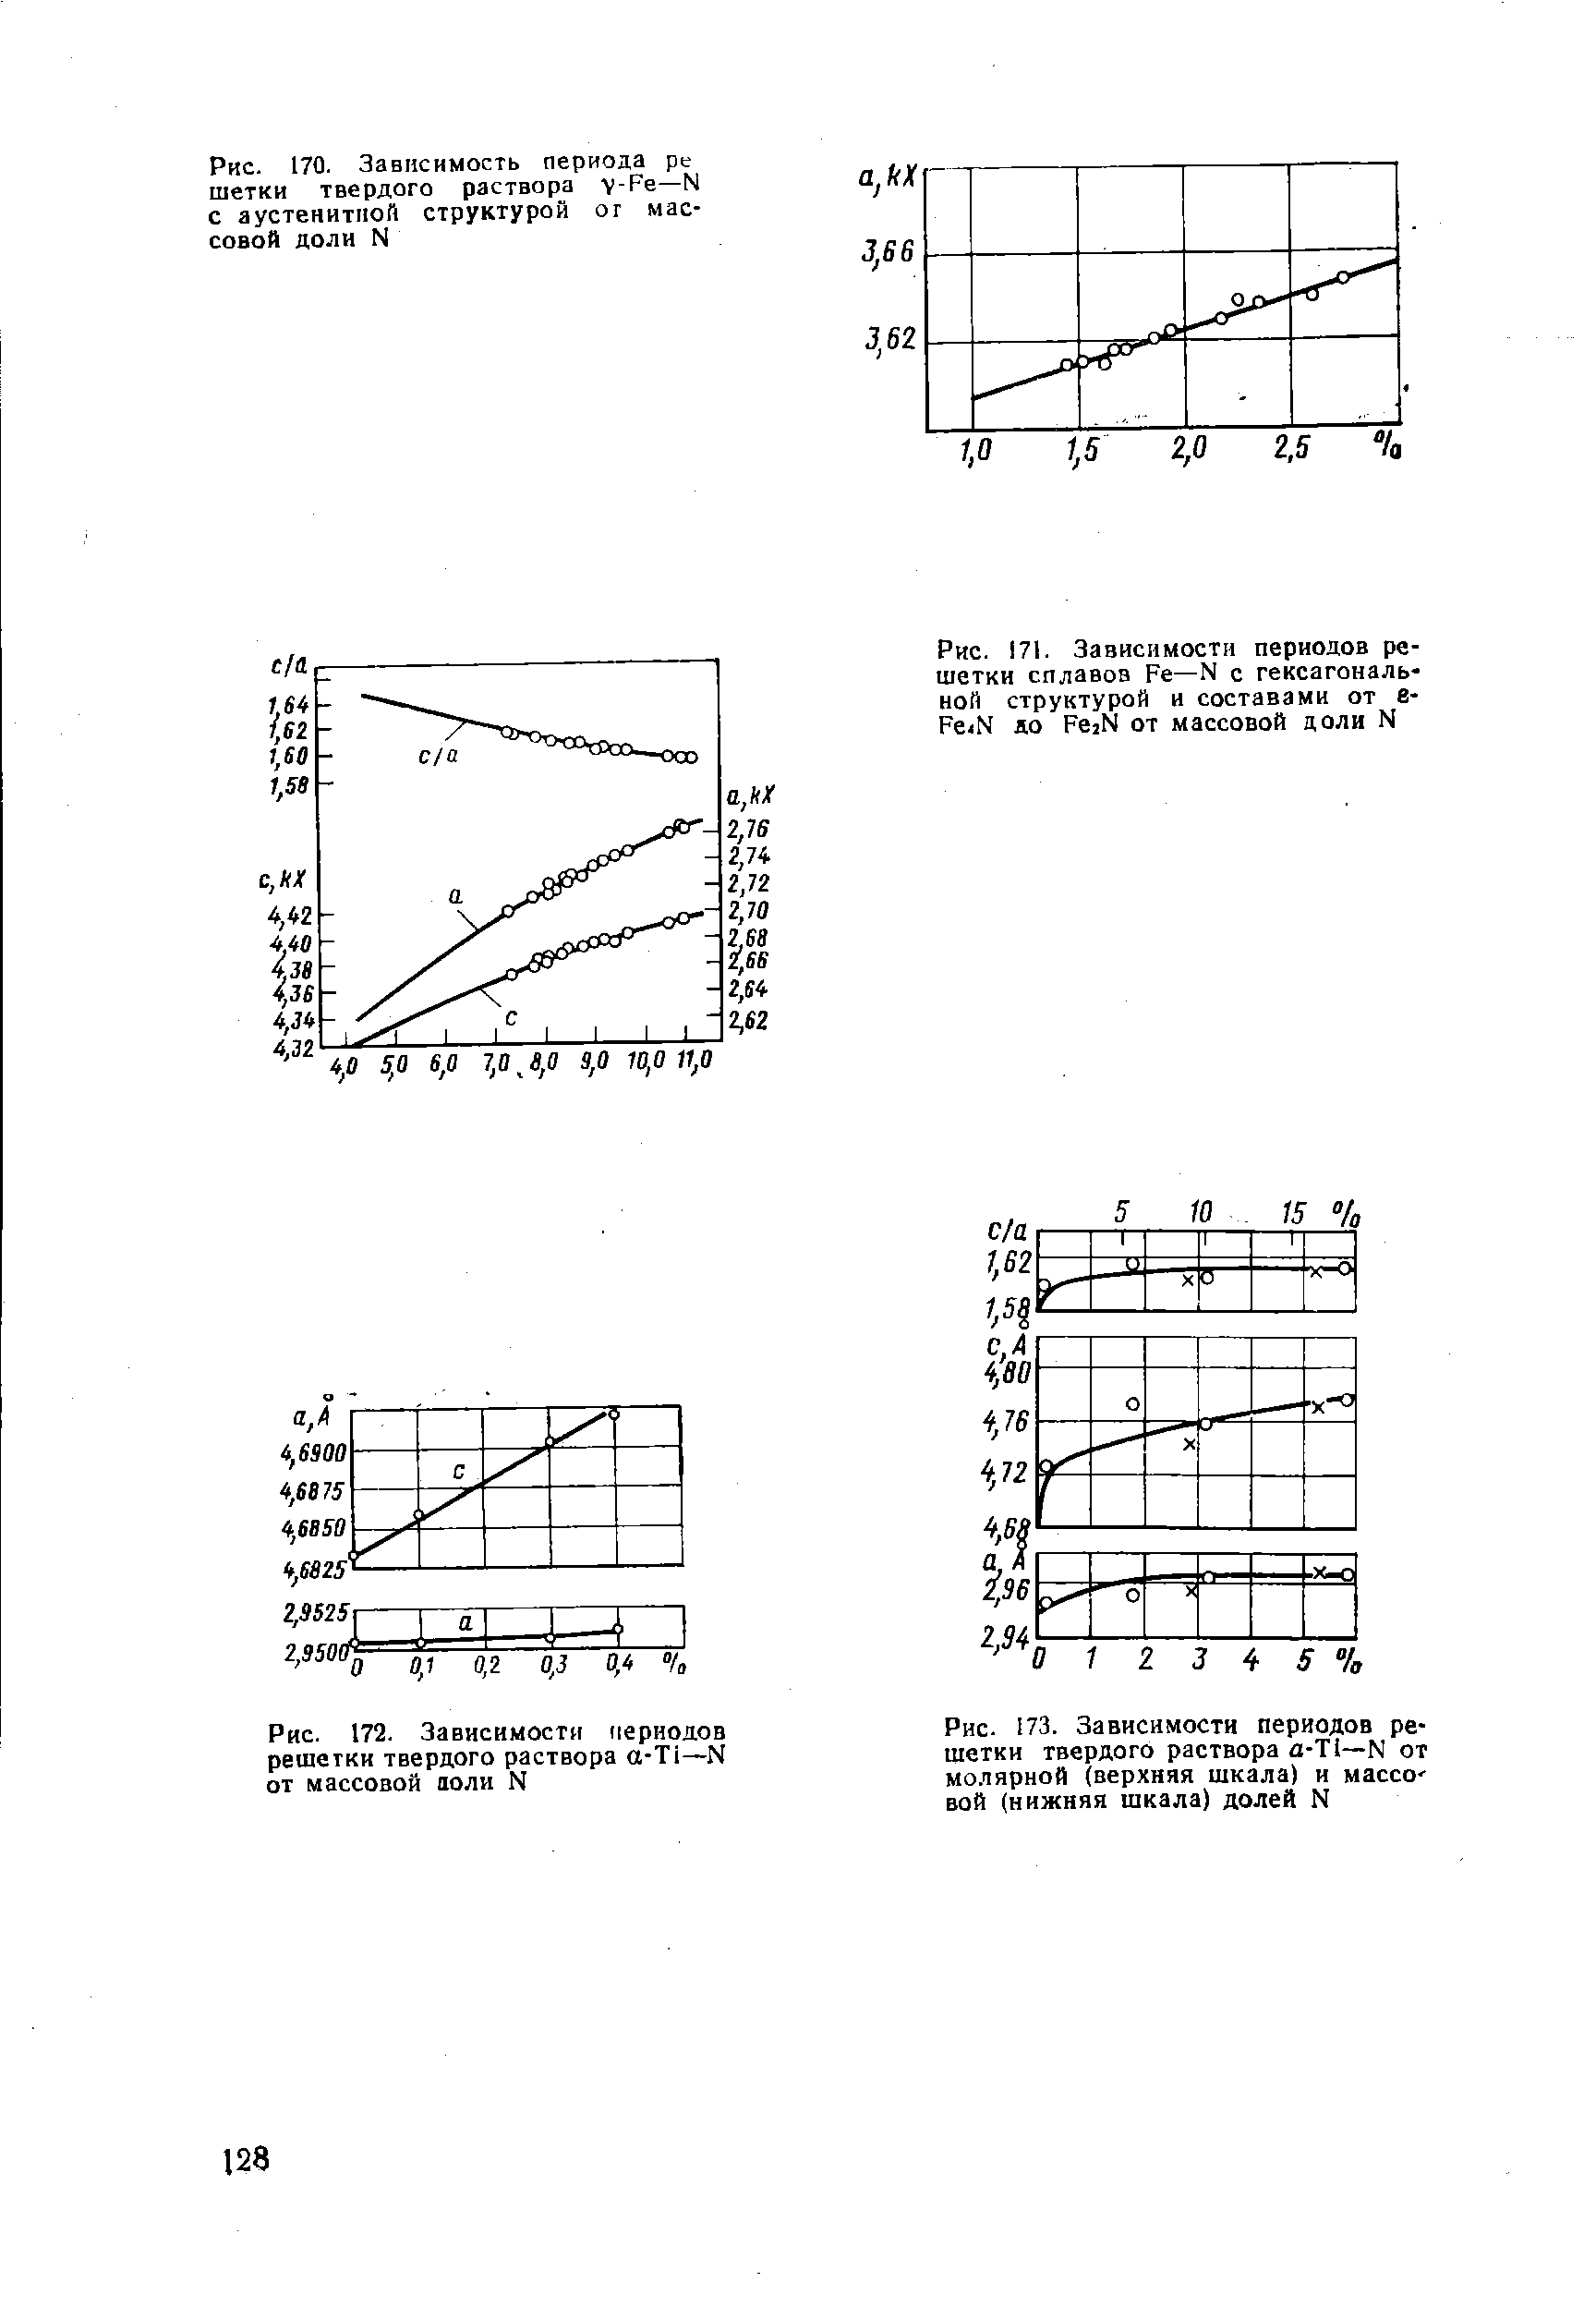 Рис. 173. Зависимости периодов решетки твердого раствора а-Т1—N от молярной (верхняя шкала) и массо вой (нижняя шкала) долей N
